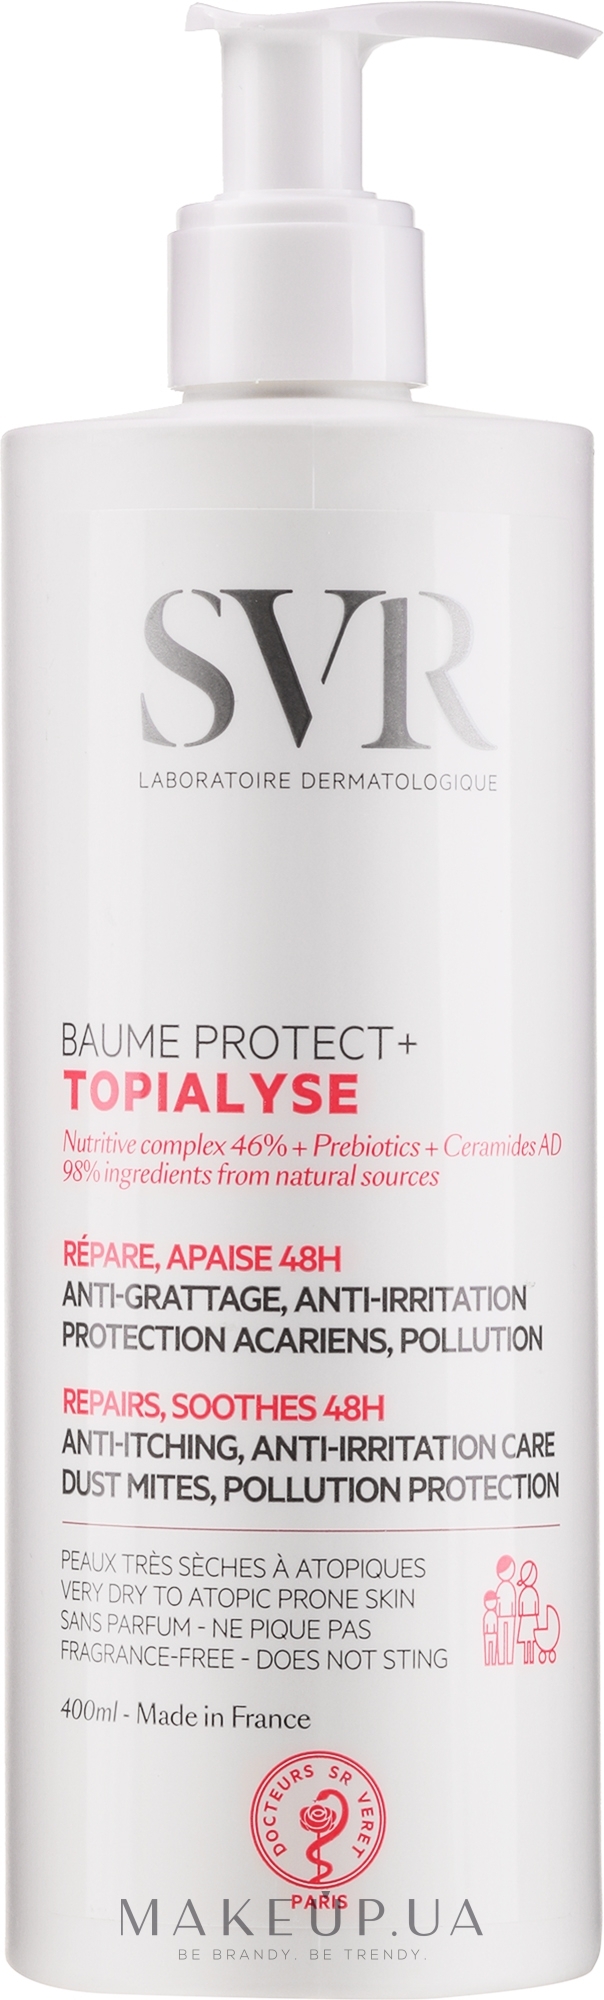 Захисний бальзам для обличчя й тіла - SVR Topialyse Balm Protect+ — фото 400ml